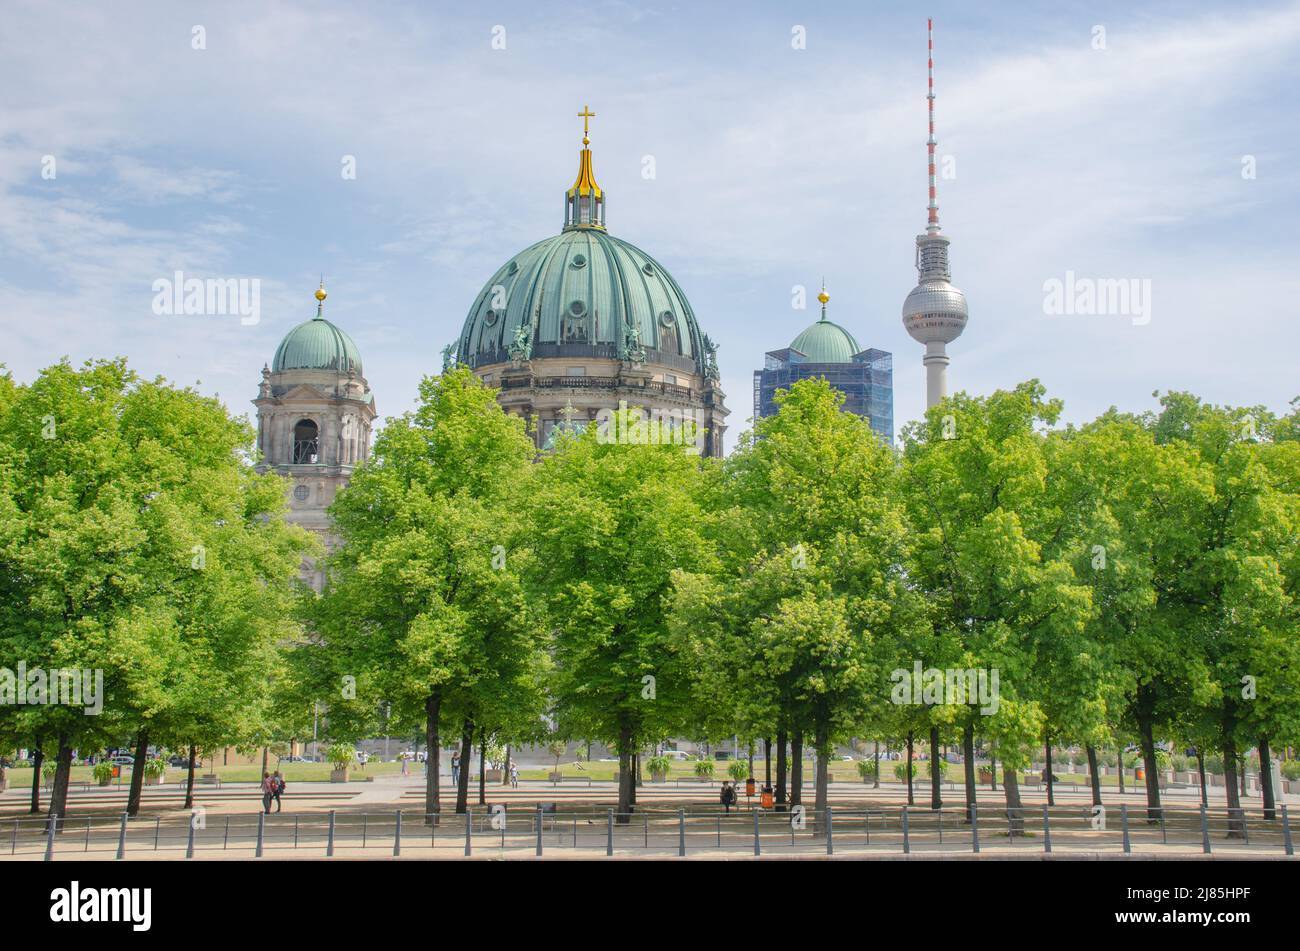 Berlino- Dom: Die Oberpfarr- und Domkirche zu Berlin in der Mitte der Stadt. Besichtigung, Gottesdienste und vielfältige Veranstaltungen Foto Stock